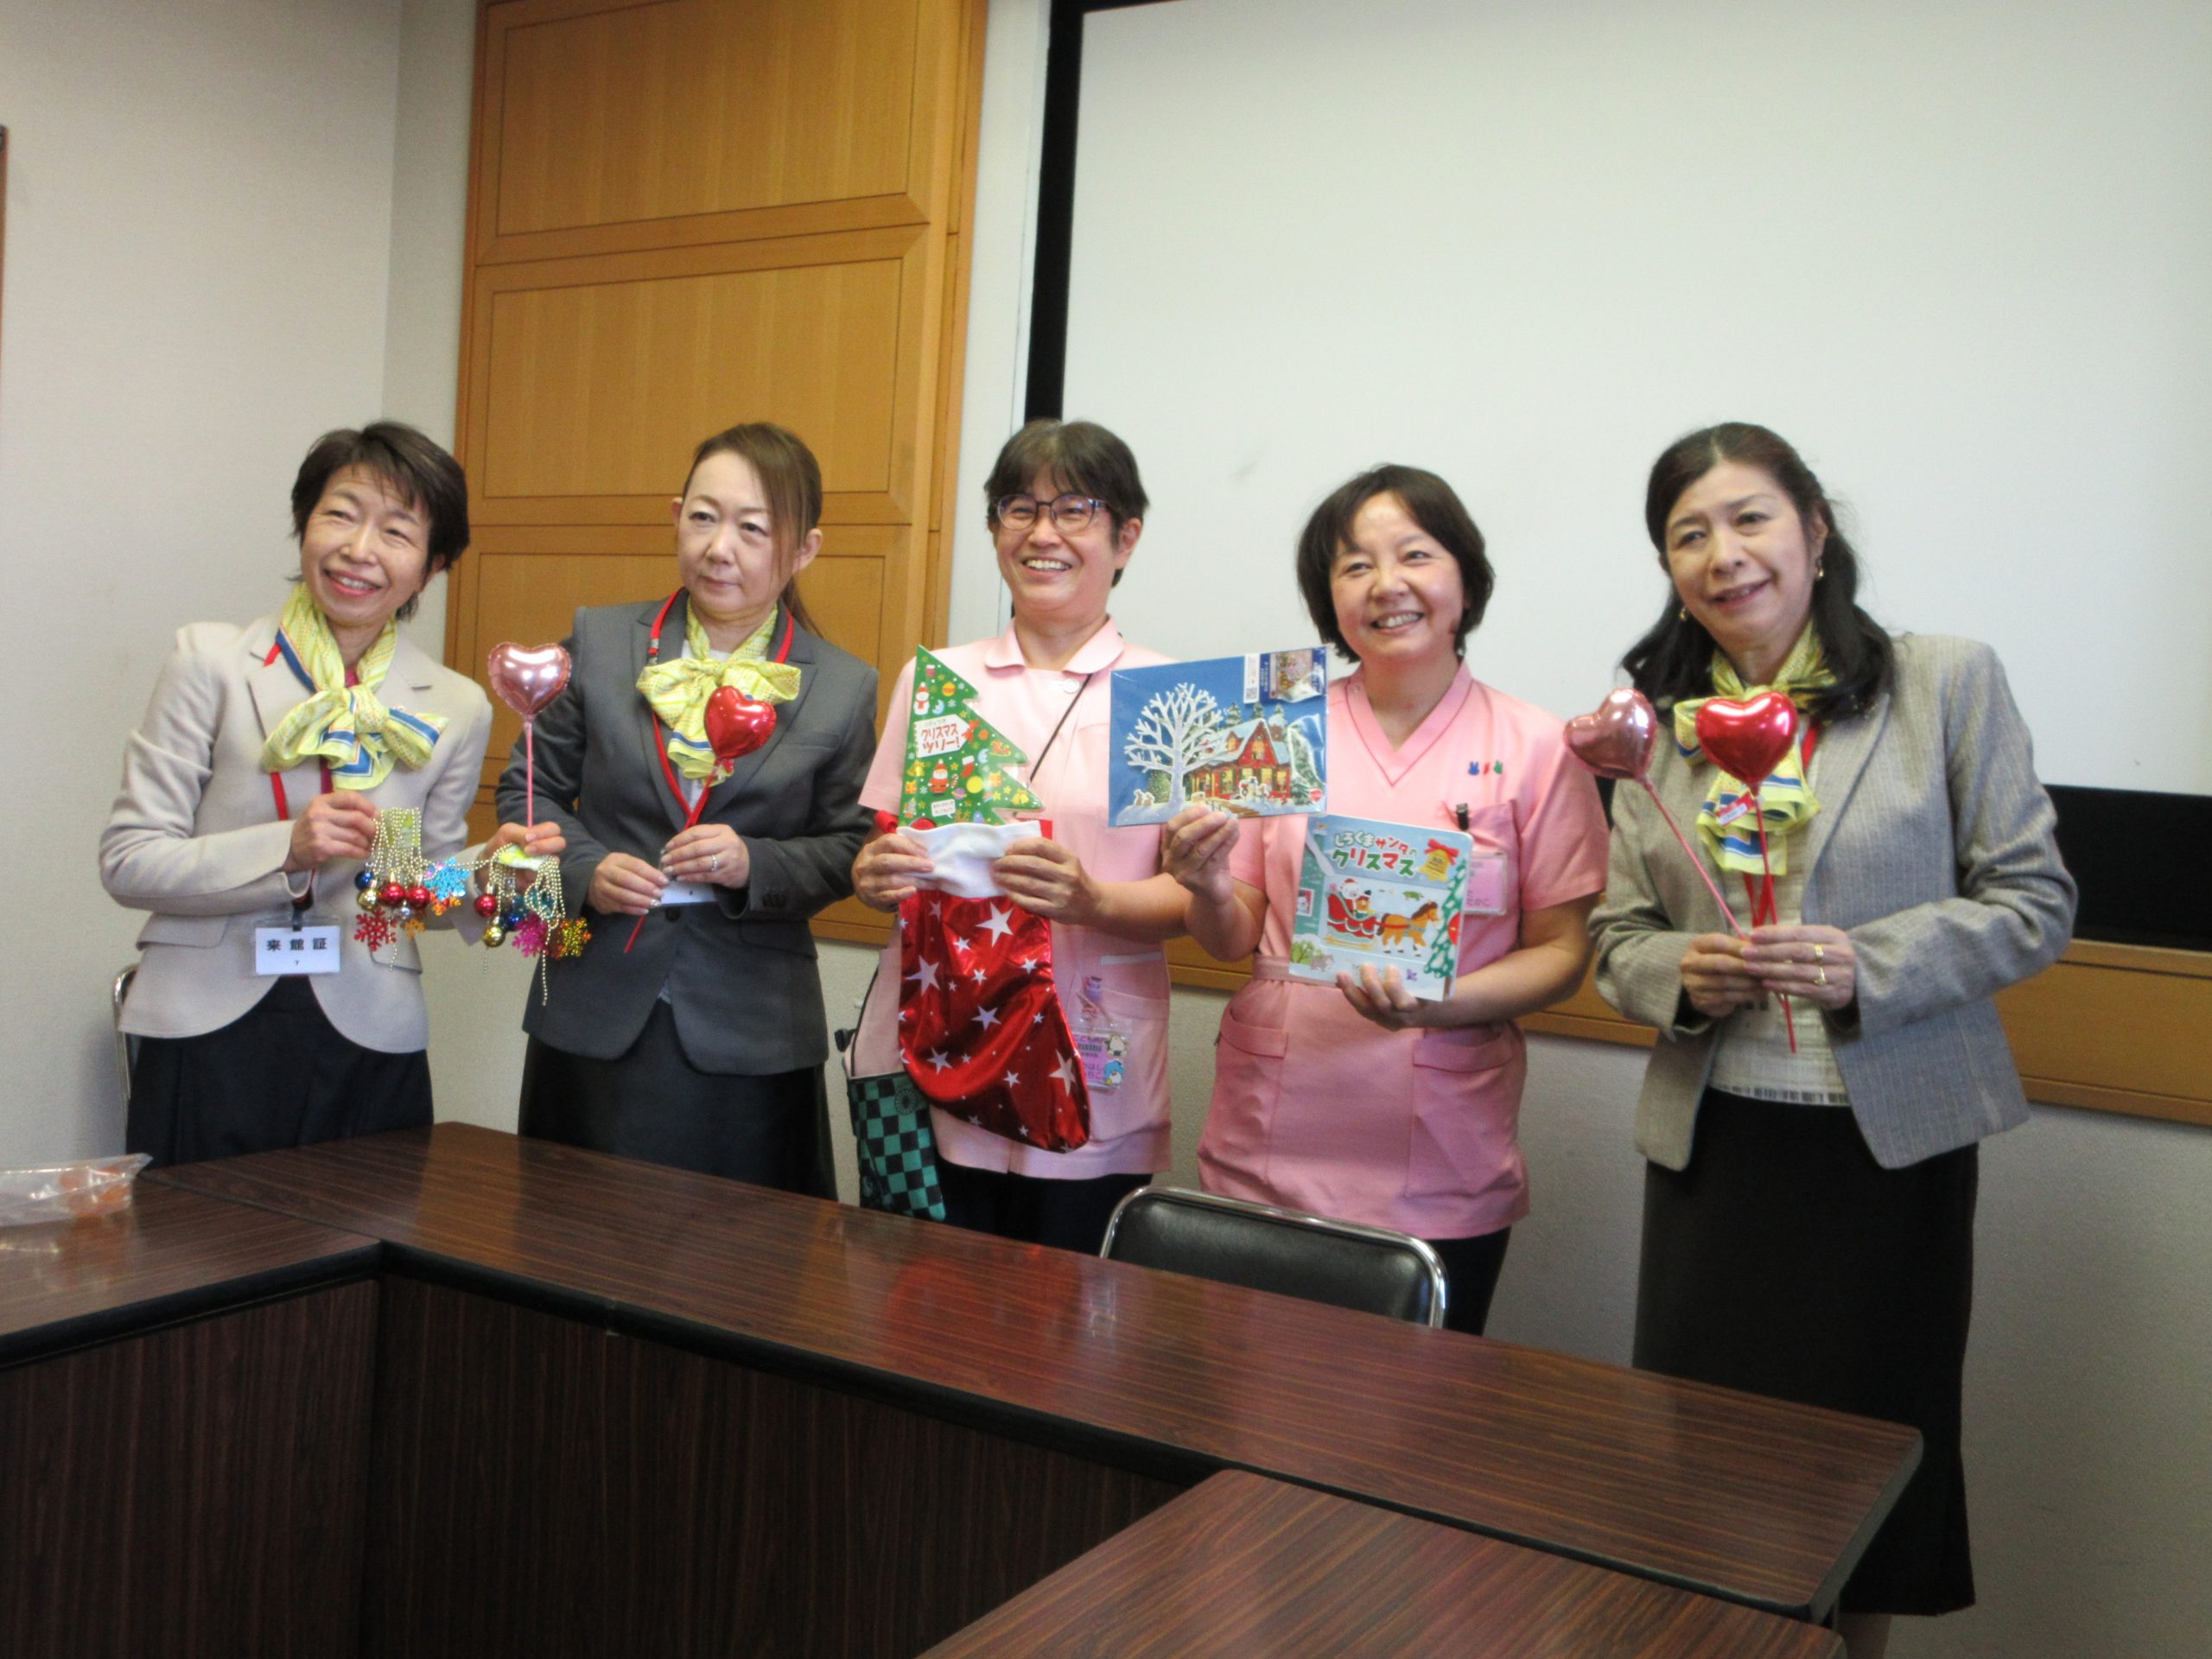 12月11日 ライオンズクラブから千葉県こども病院 血液腫瘍科への寄贈